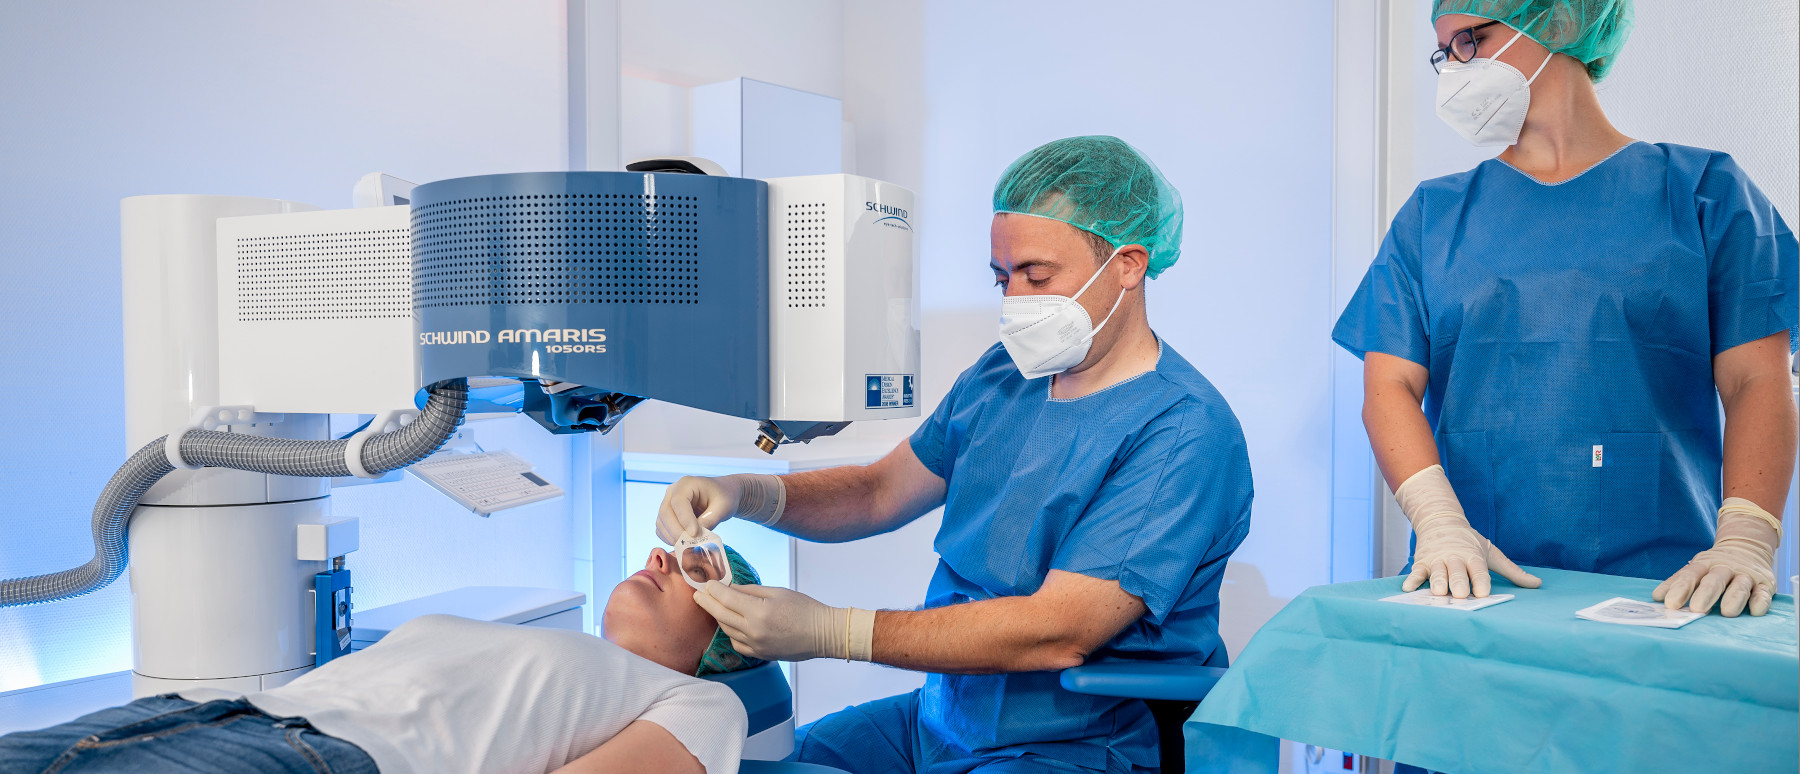 Augenarzt Dr. Christian Ahlers bereitet die Augenlaser-Behandlung einer Patientin mit dem berührungsfreien Augenlaser zur Korrektur von Kurz- und Weitsichtigkeit vor